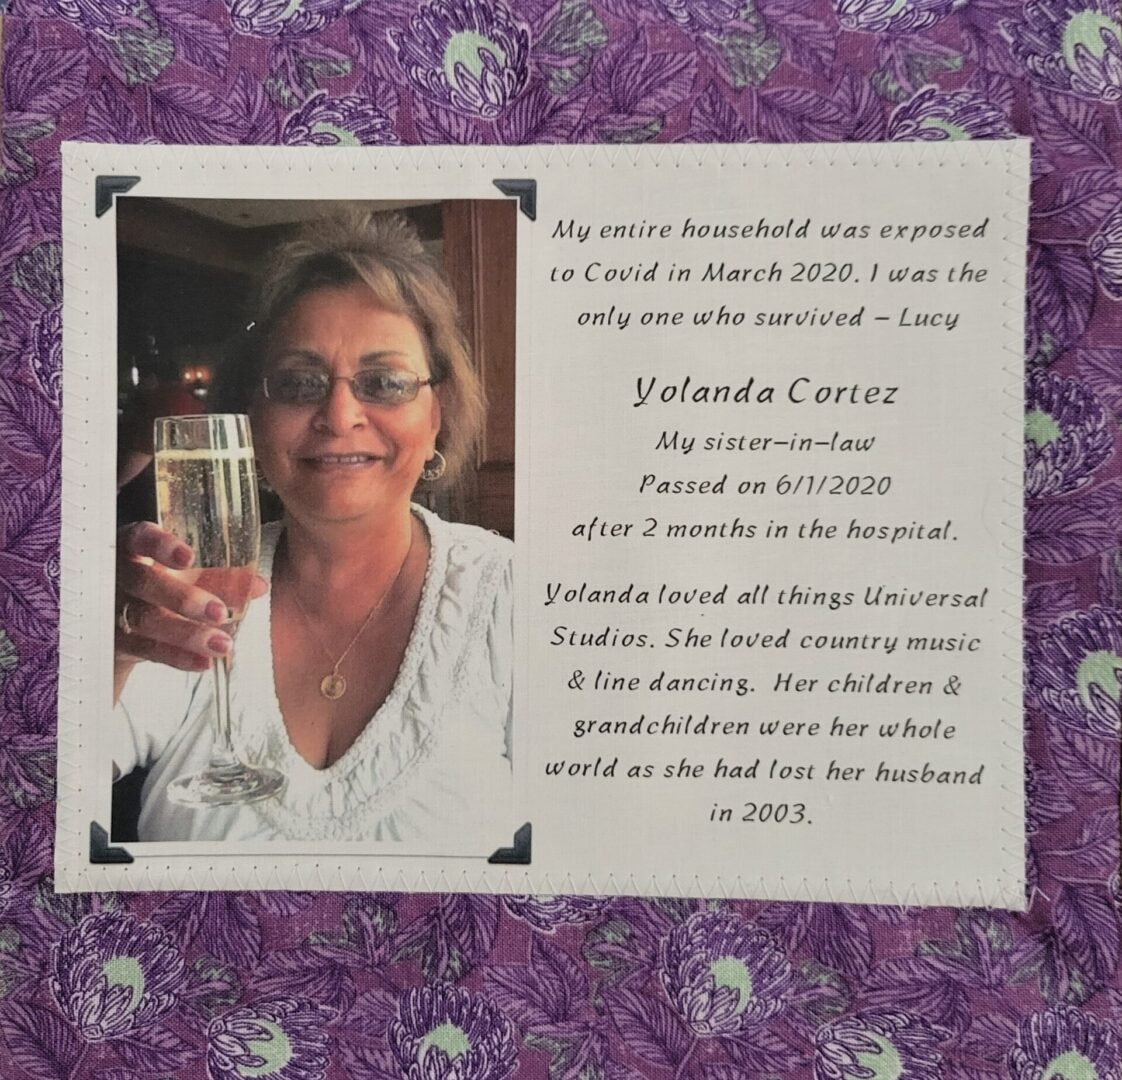 IN MEMORY OF YOLANDA CORTEZ - 6/1/2020